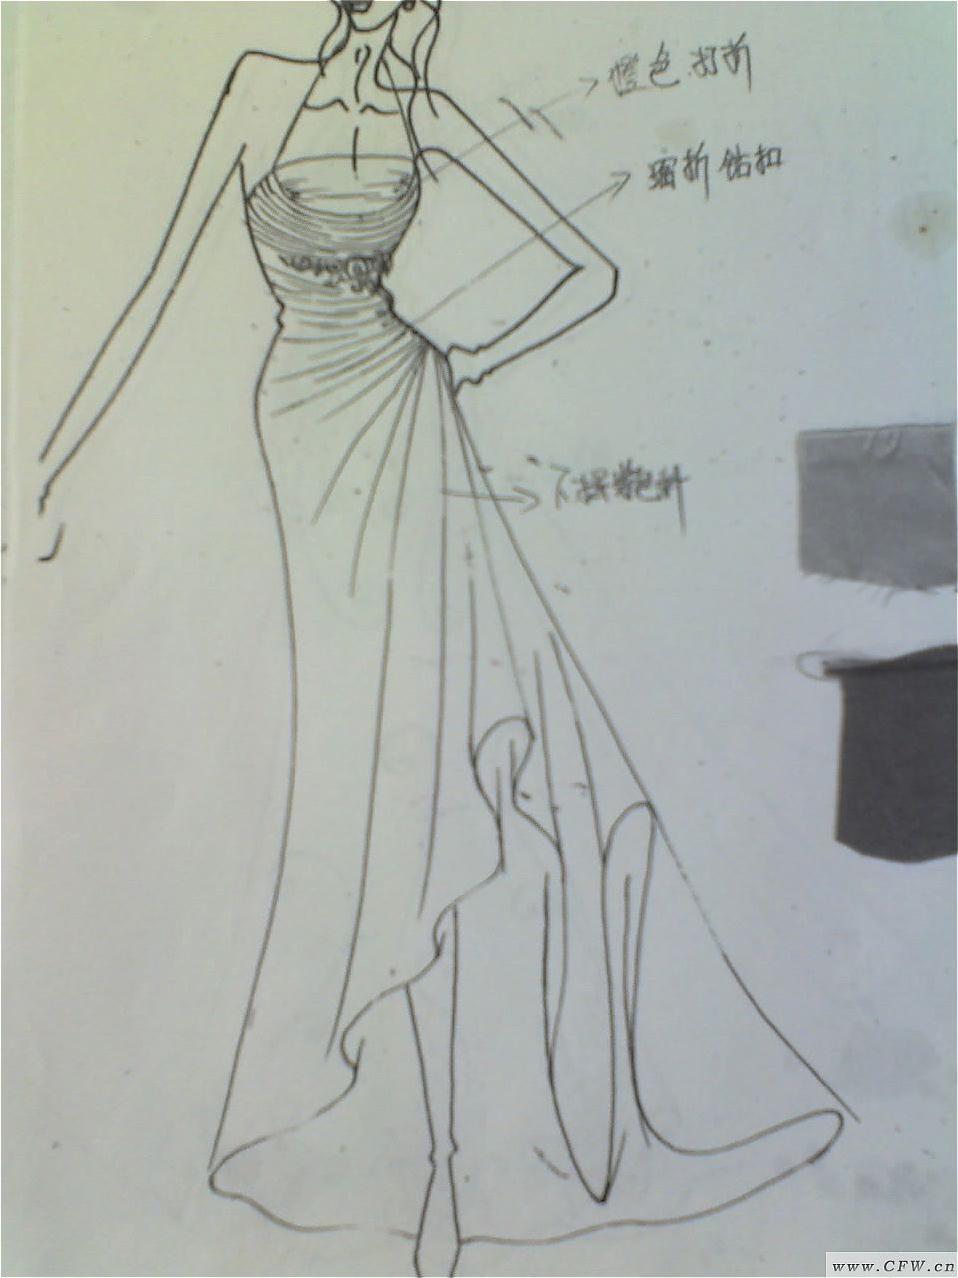 晚礼服与小礼服-婚纱礼服设计-服装设计